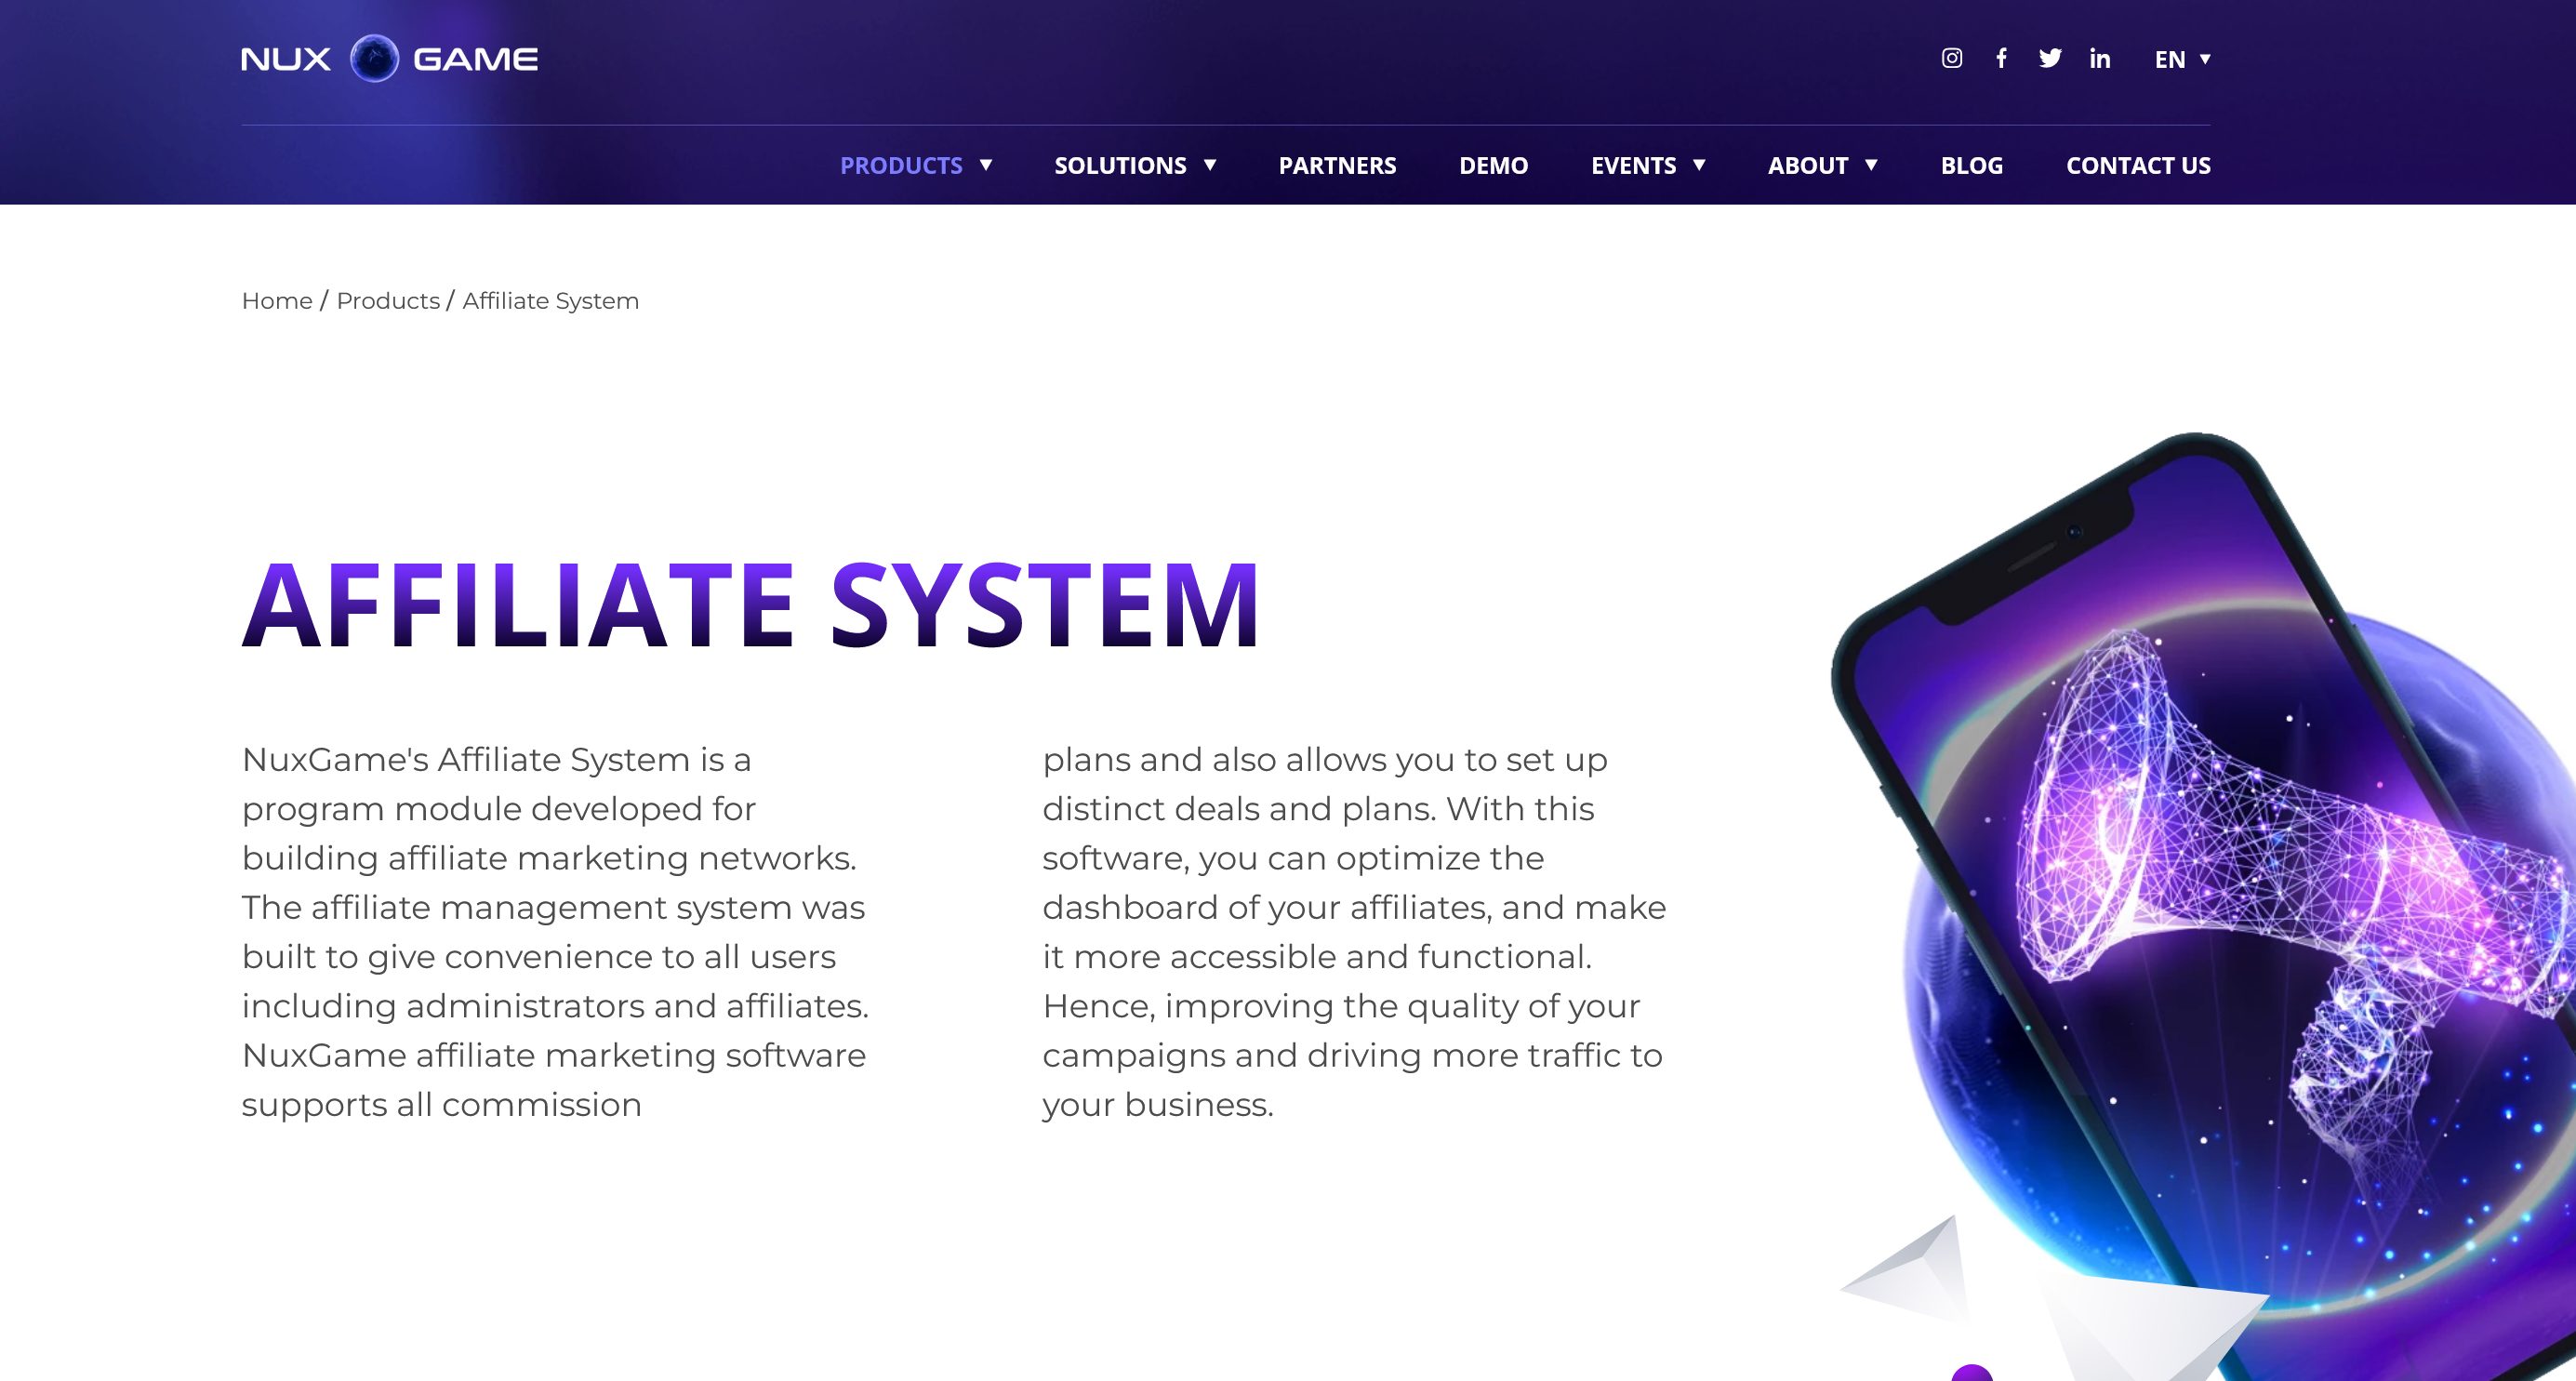 NuxGame Affiliate System 是一個專為創建聯盟營銷網絡而設計的程序模塊。